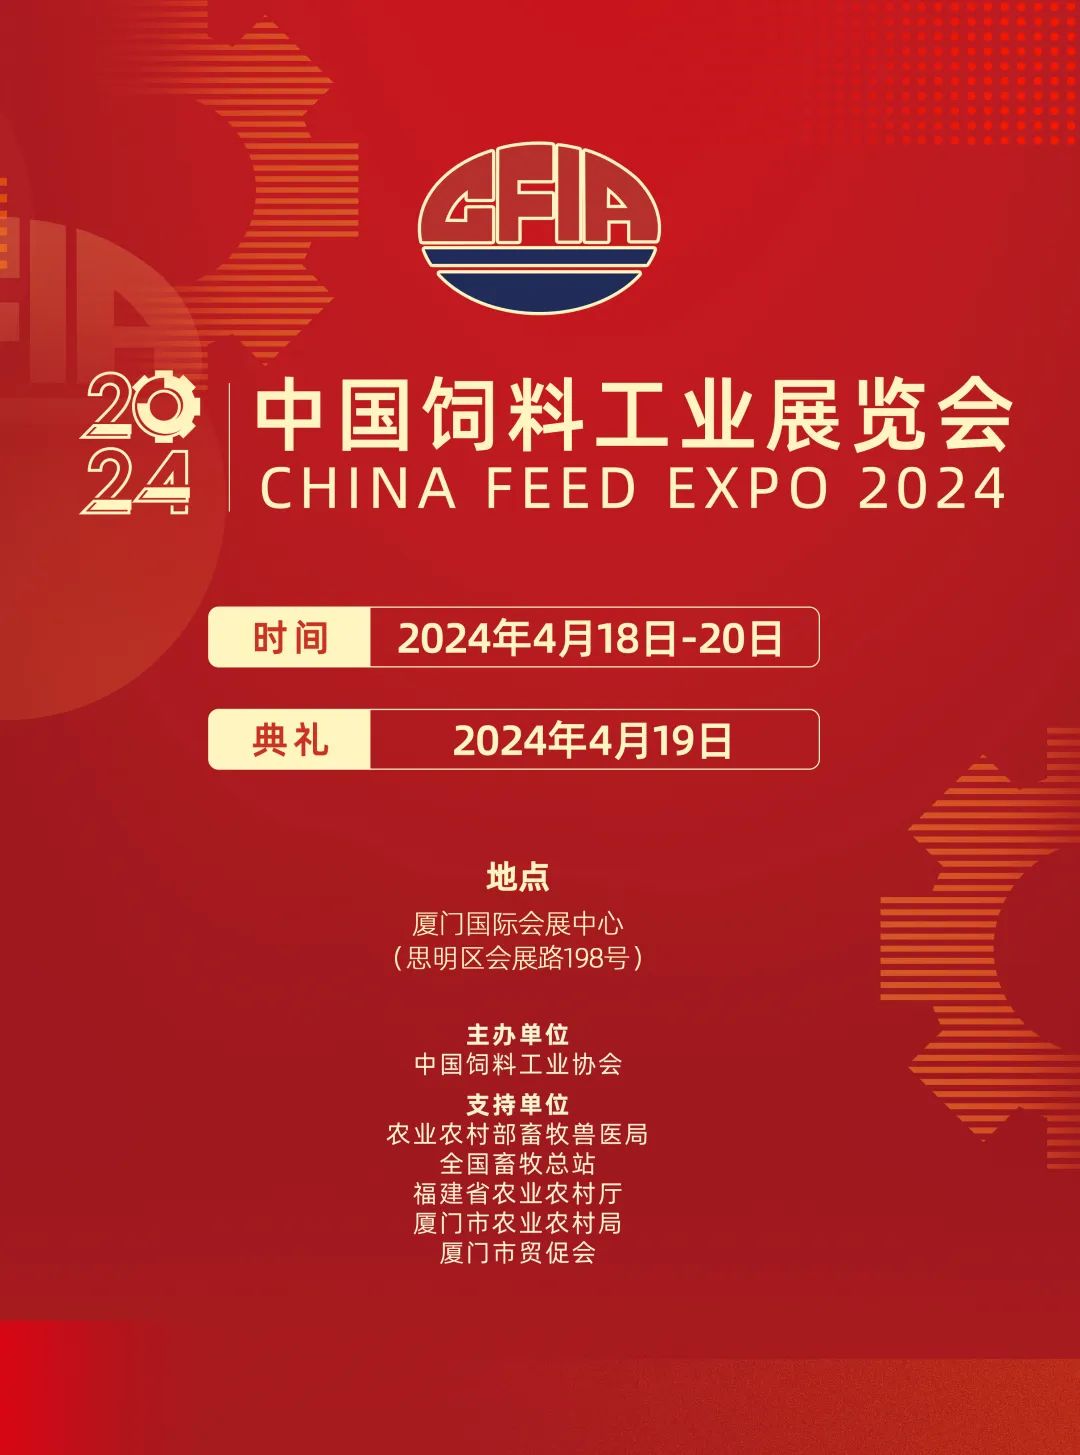 2024中国饲料工业展览会将在厦门隆重召开